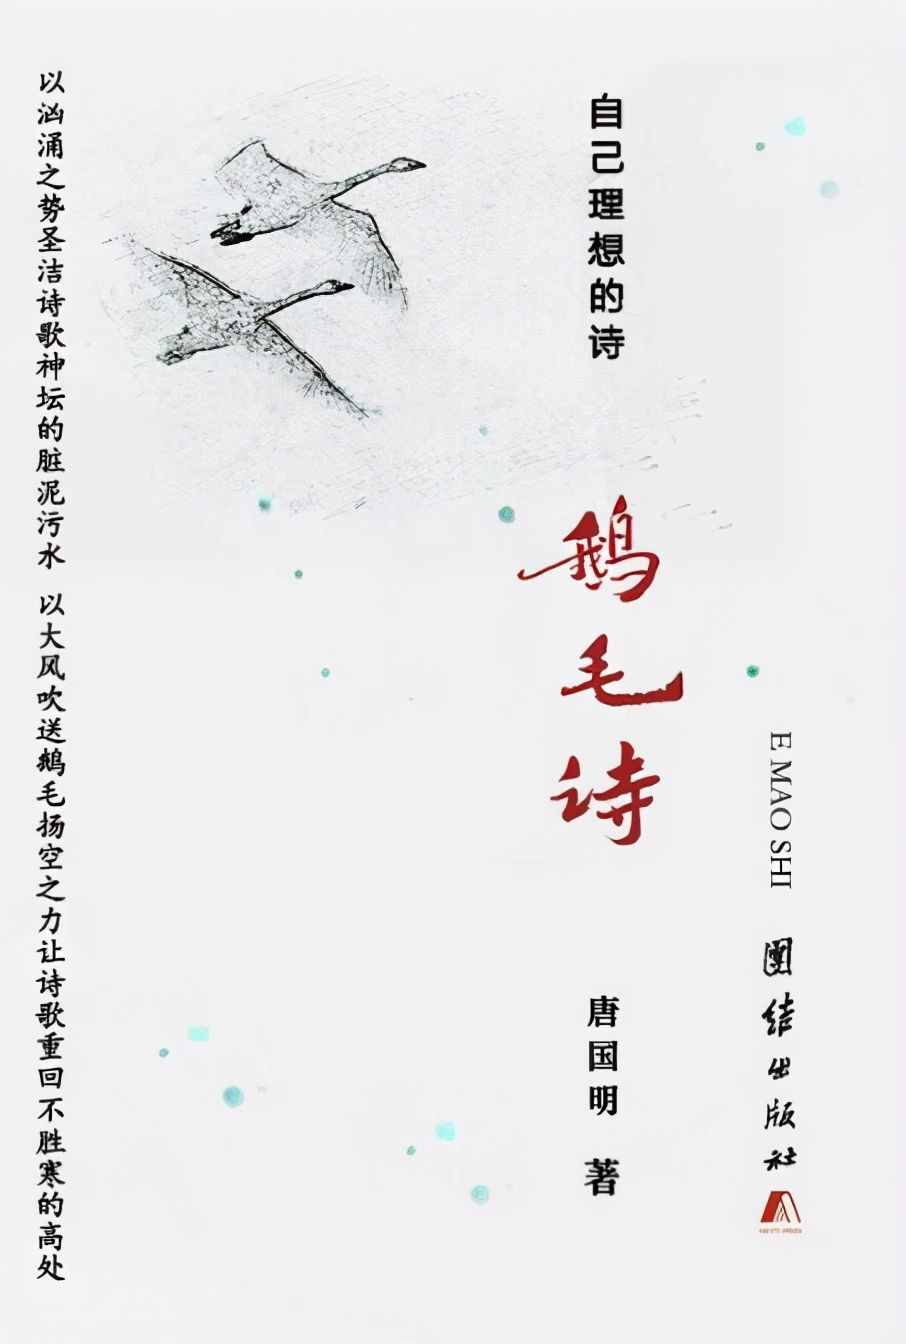 让天下人读到了曹雪芹全本《红楼梦》的唐国明